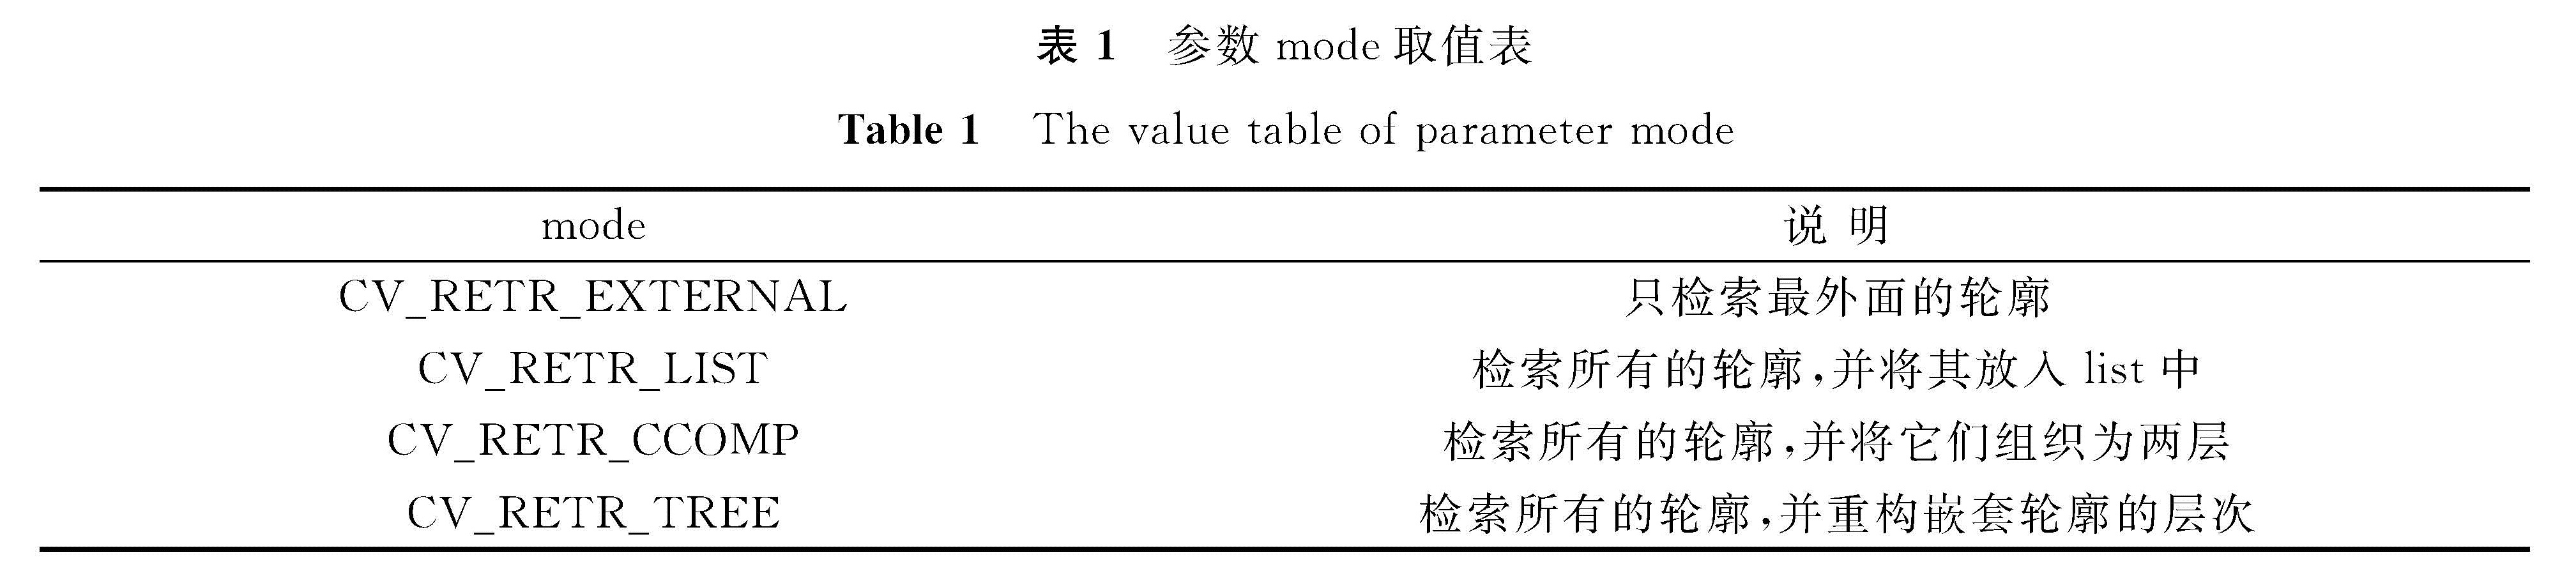 表1 参数mode取值表<br/>Table 1 The value table of parameter mode